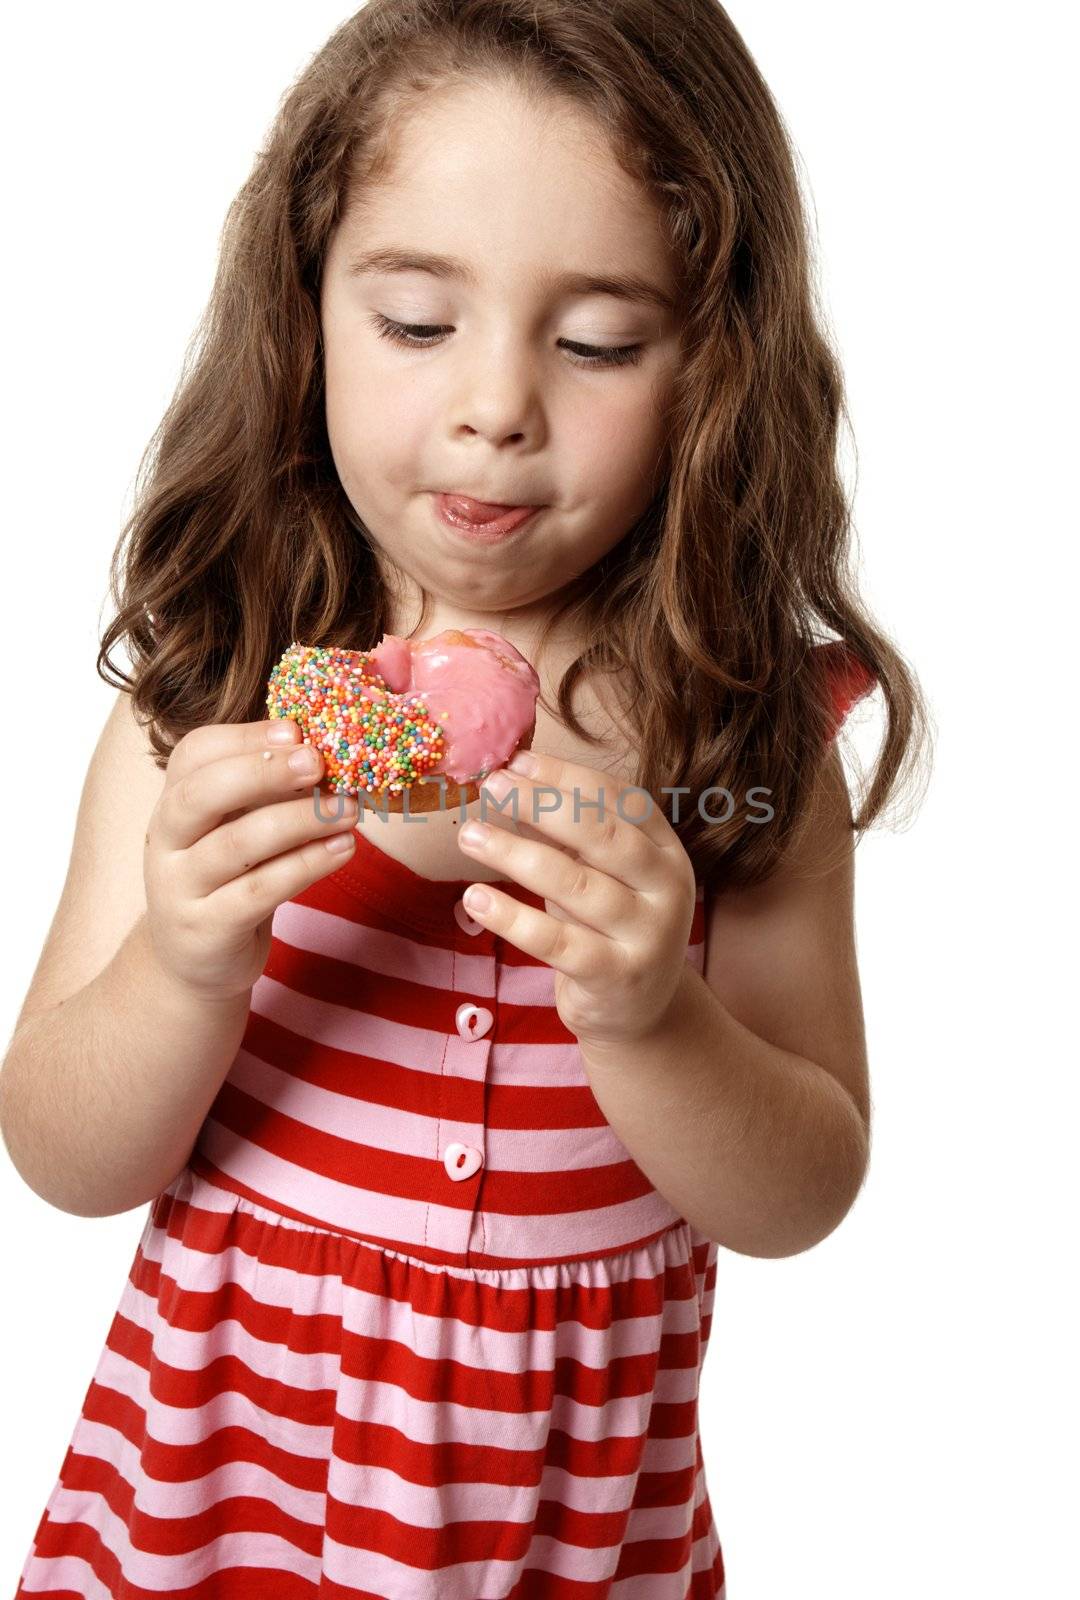 Tasty doughnut treat by lovleah